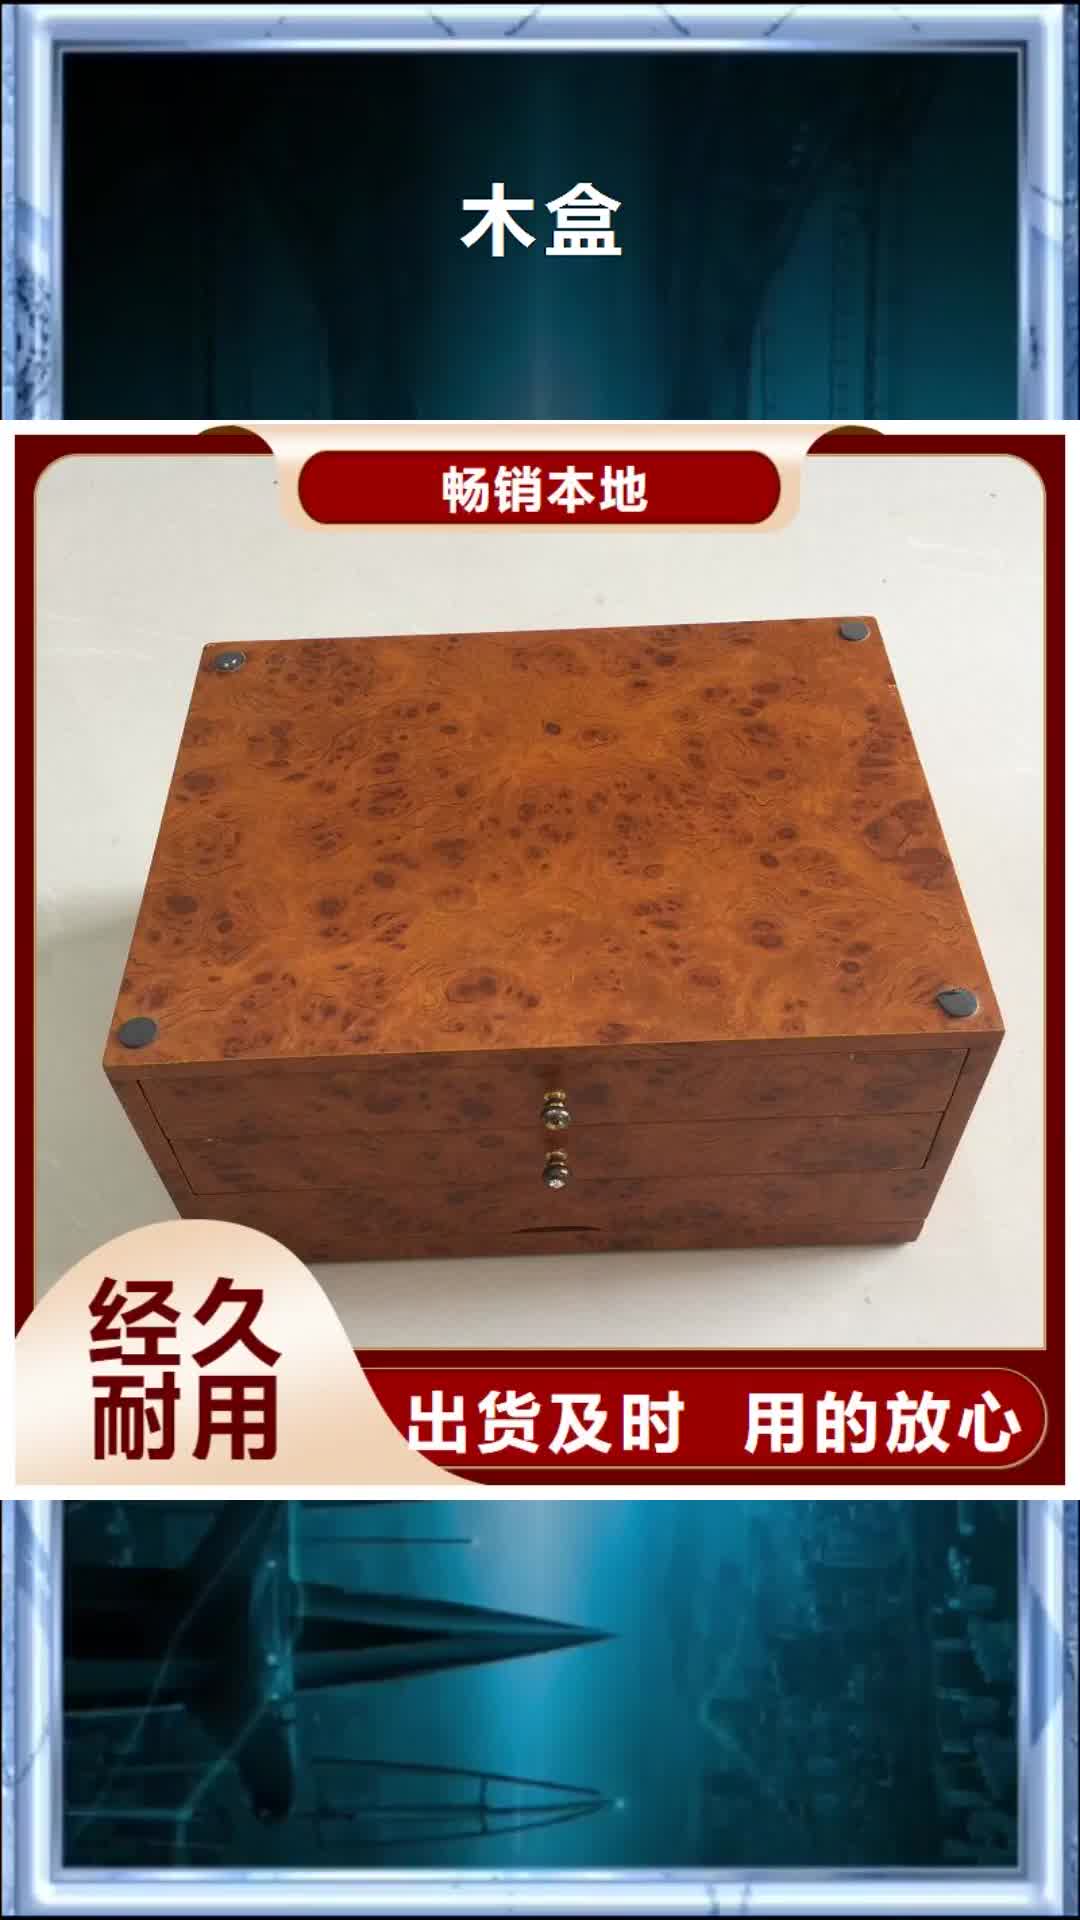 自贡 木盒,【电码防伪标签】细节展示